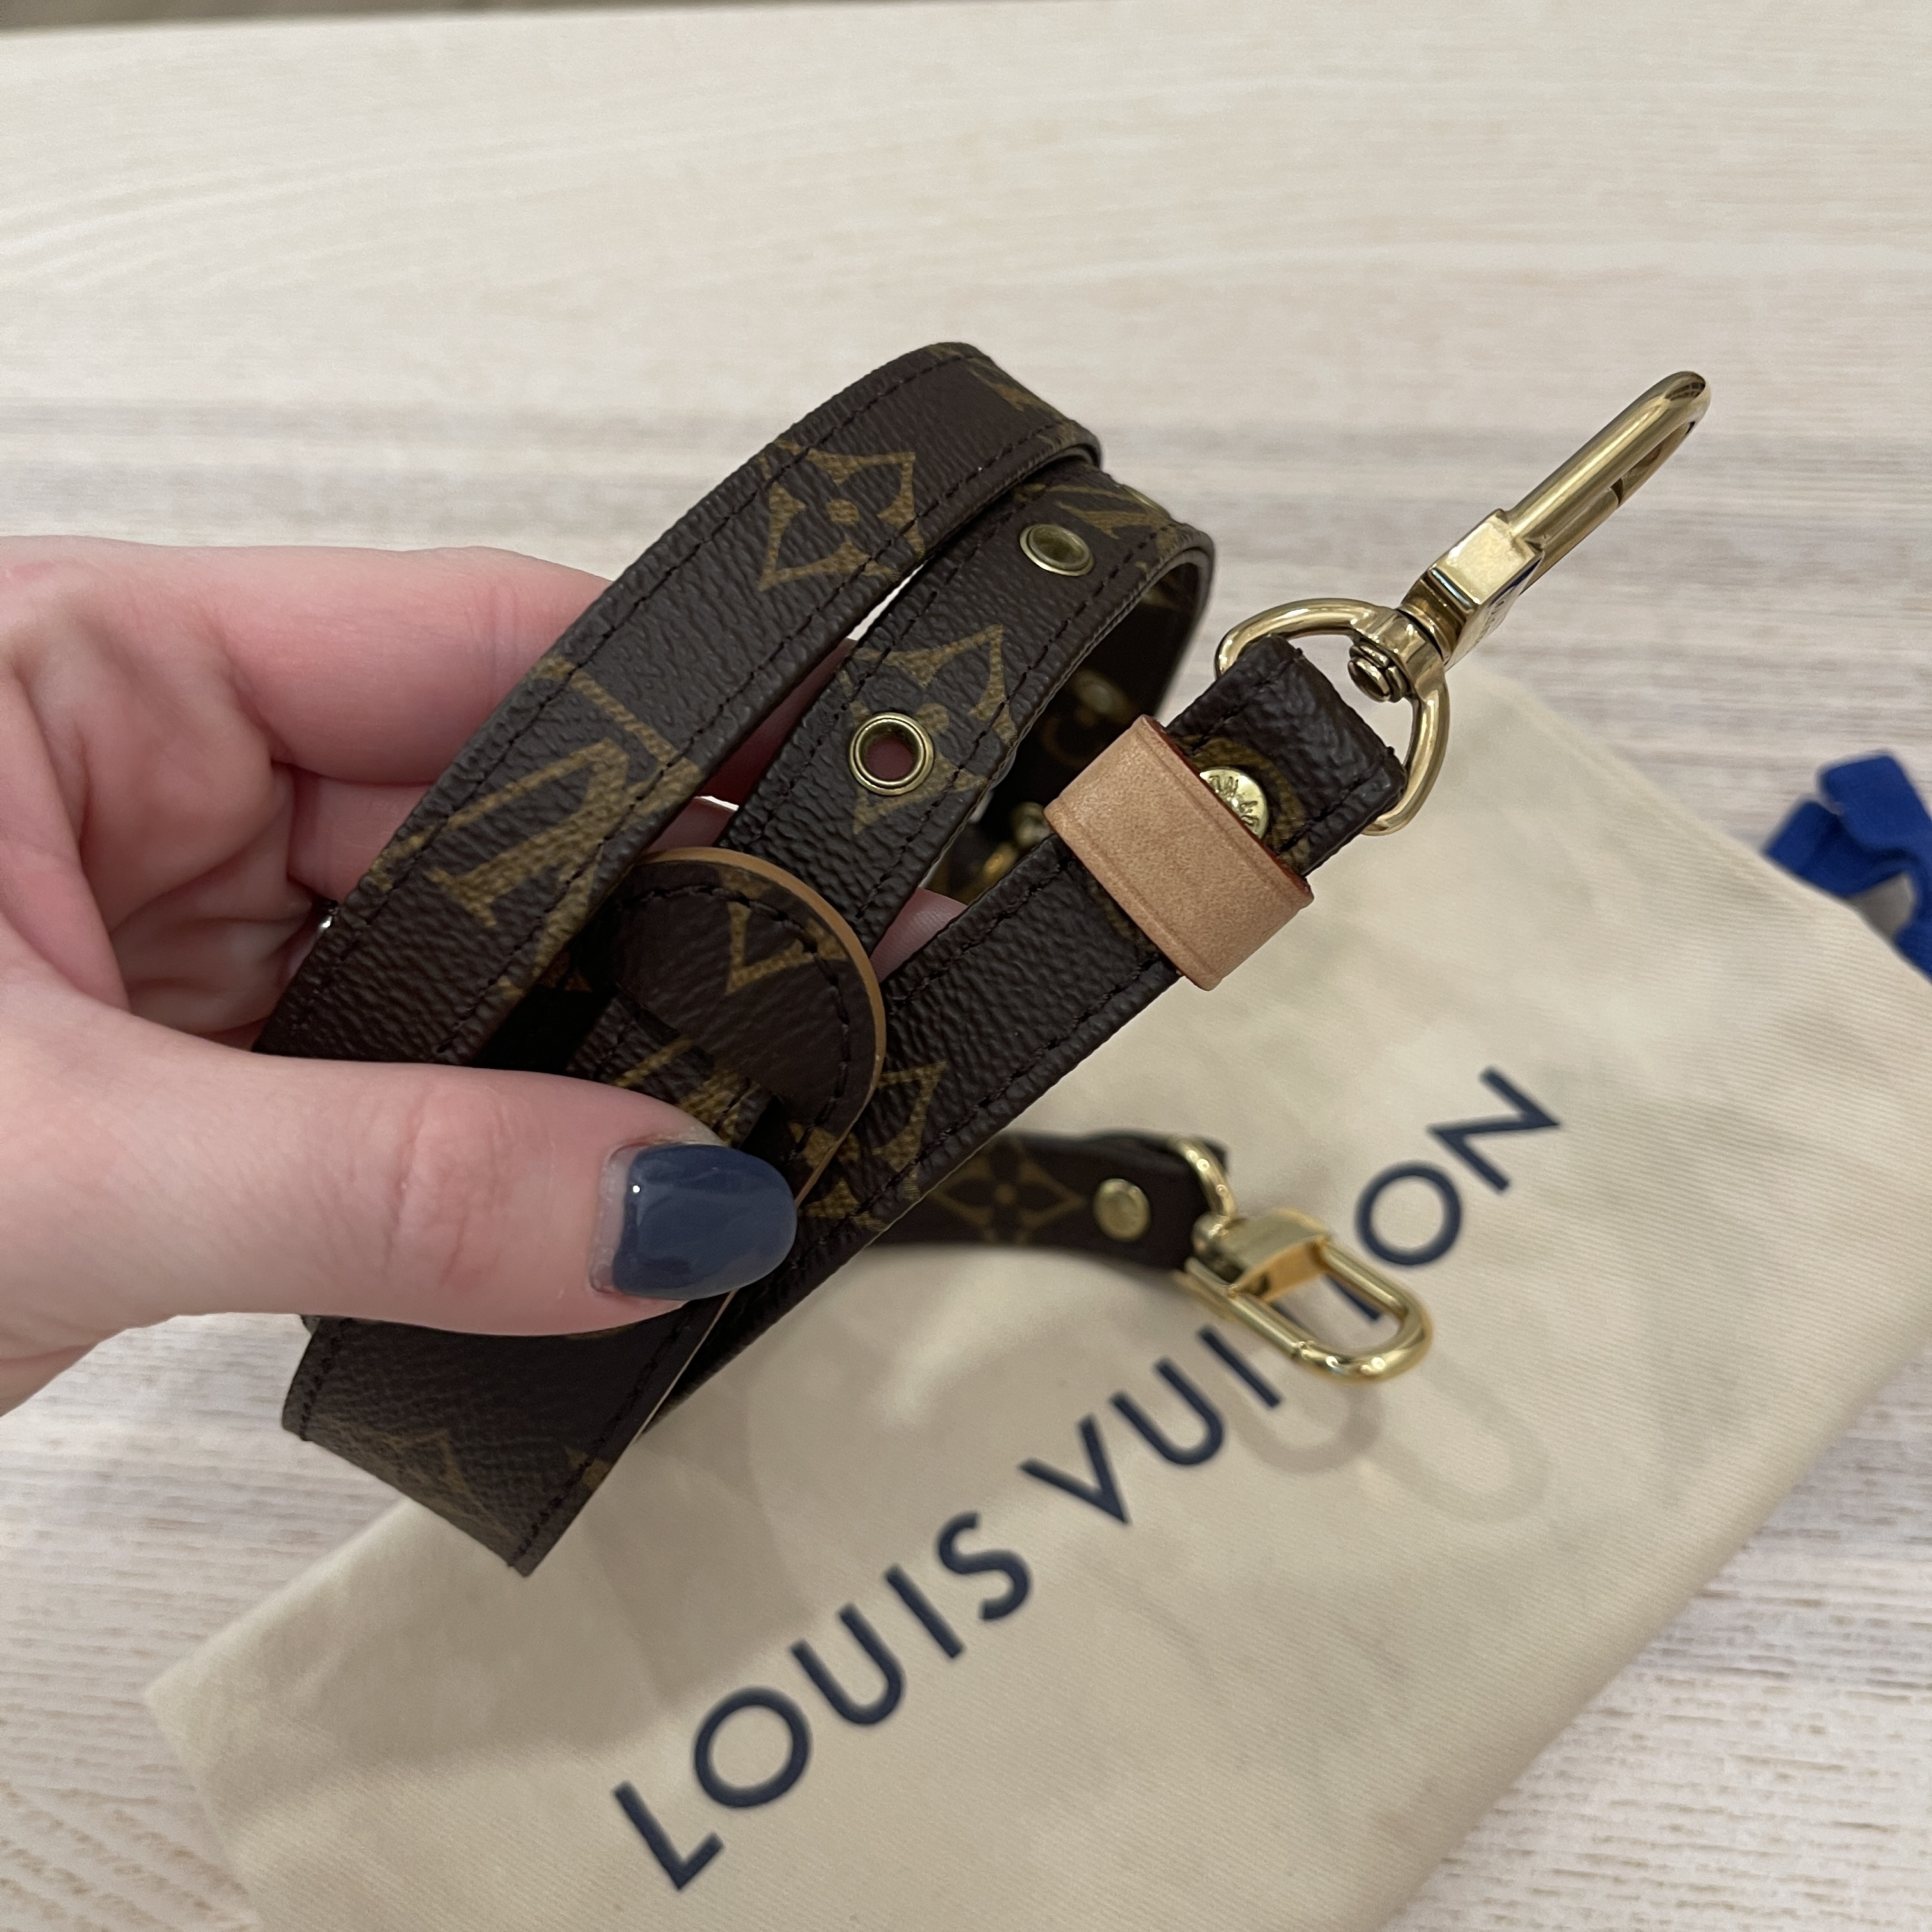 Louis Vuitton Adjustable Shoulder Strap 16 MM Monogram, with Mod Shots